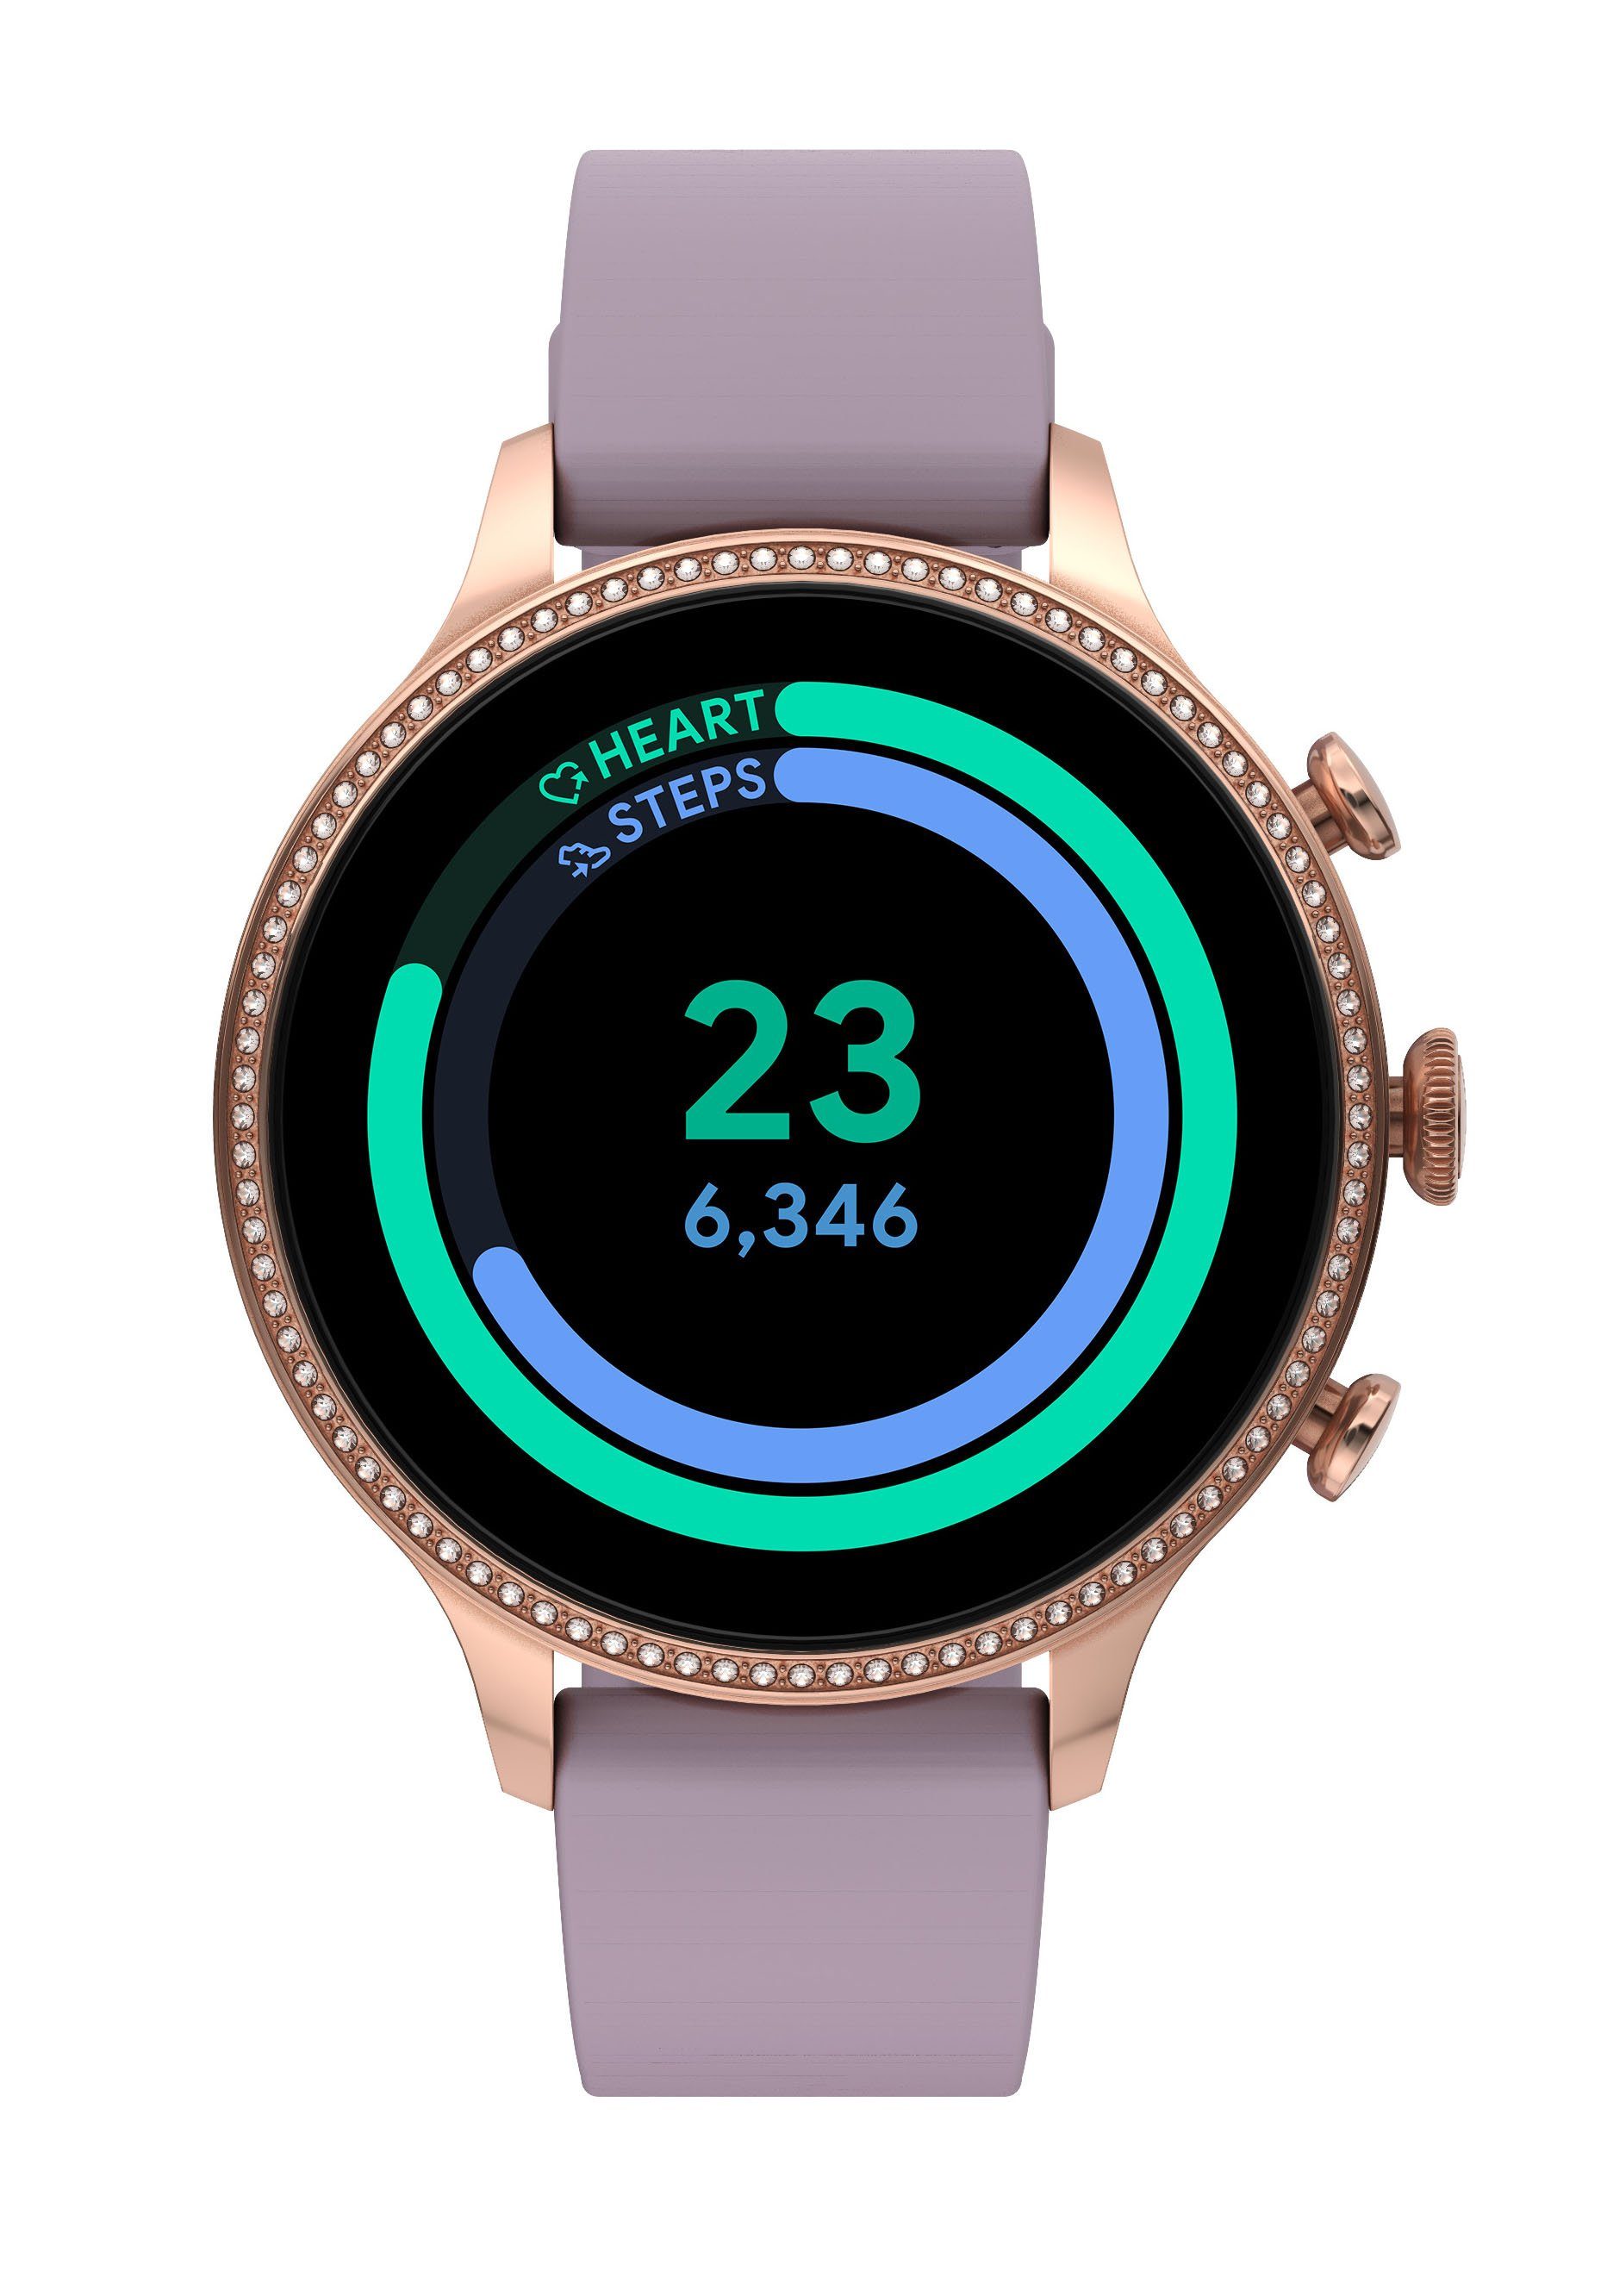 Fossil Smartwatches GEN 6, FTW6080 Smartwatch (Wear OS by Google) online  kaufen | OTTO